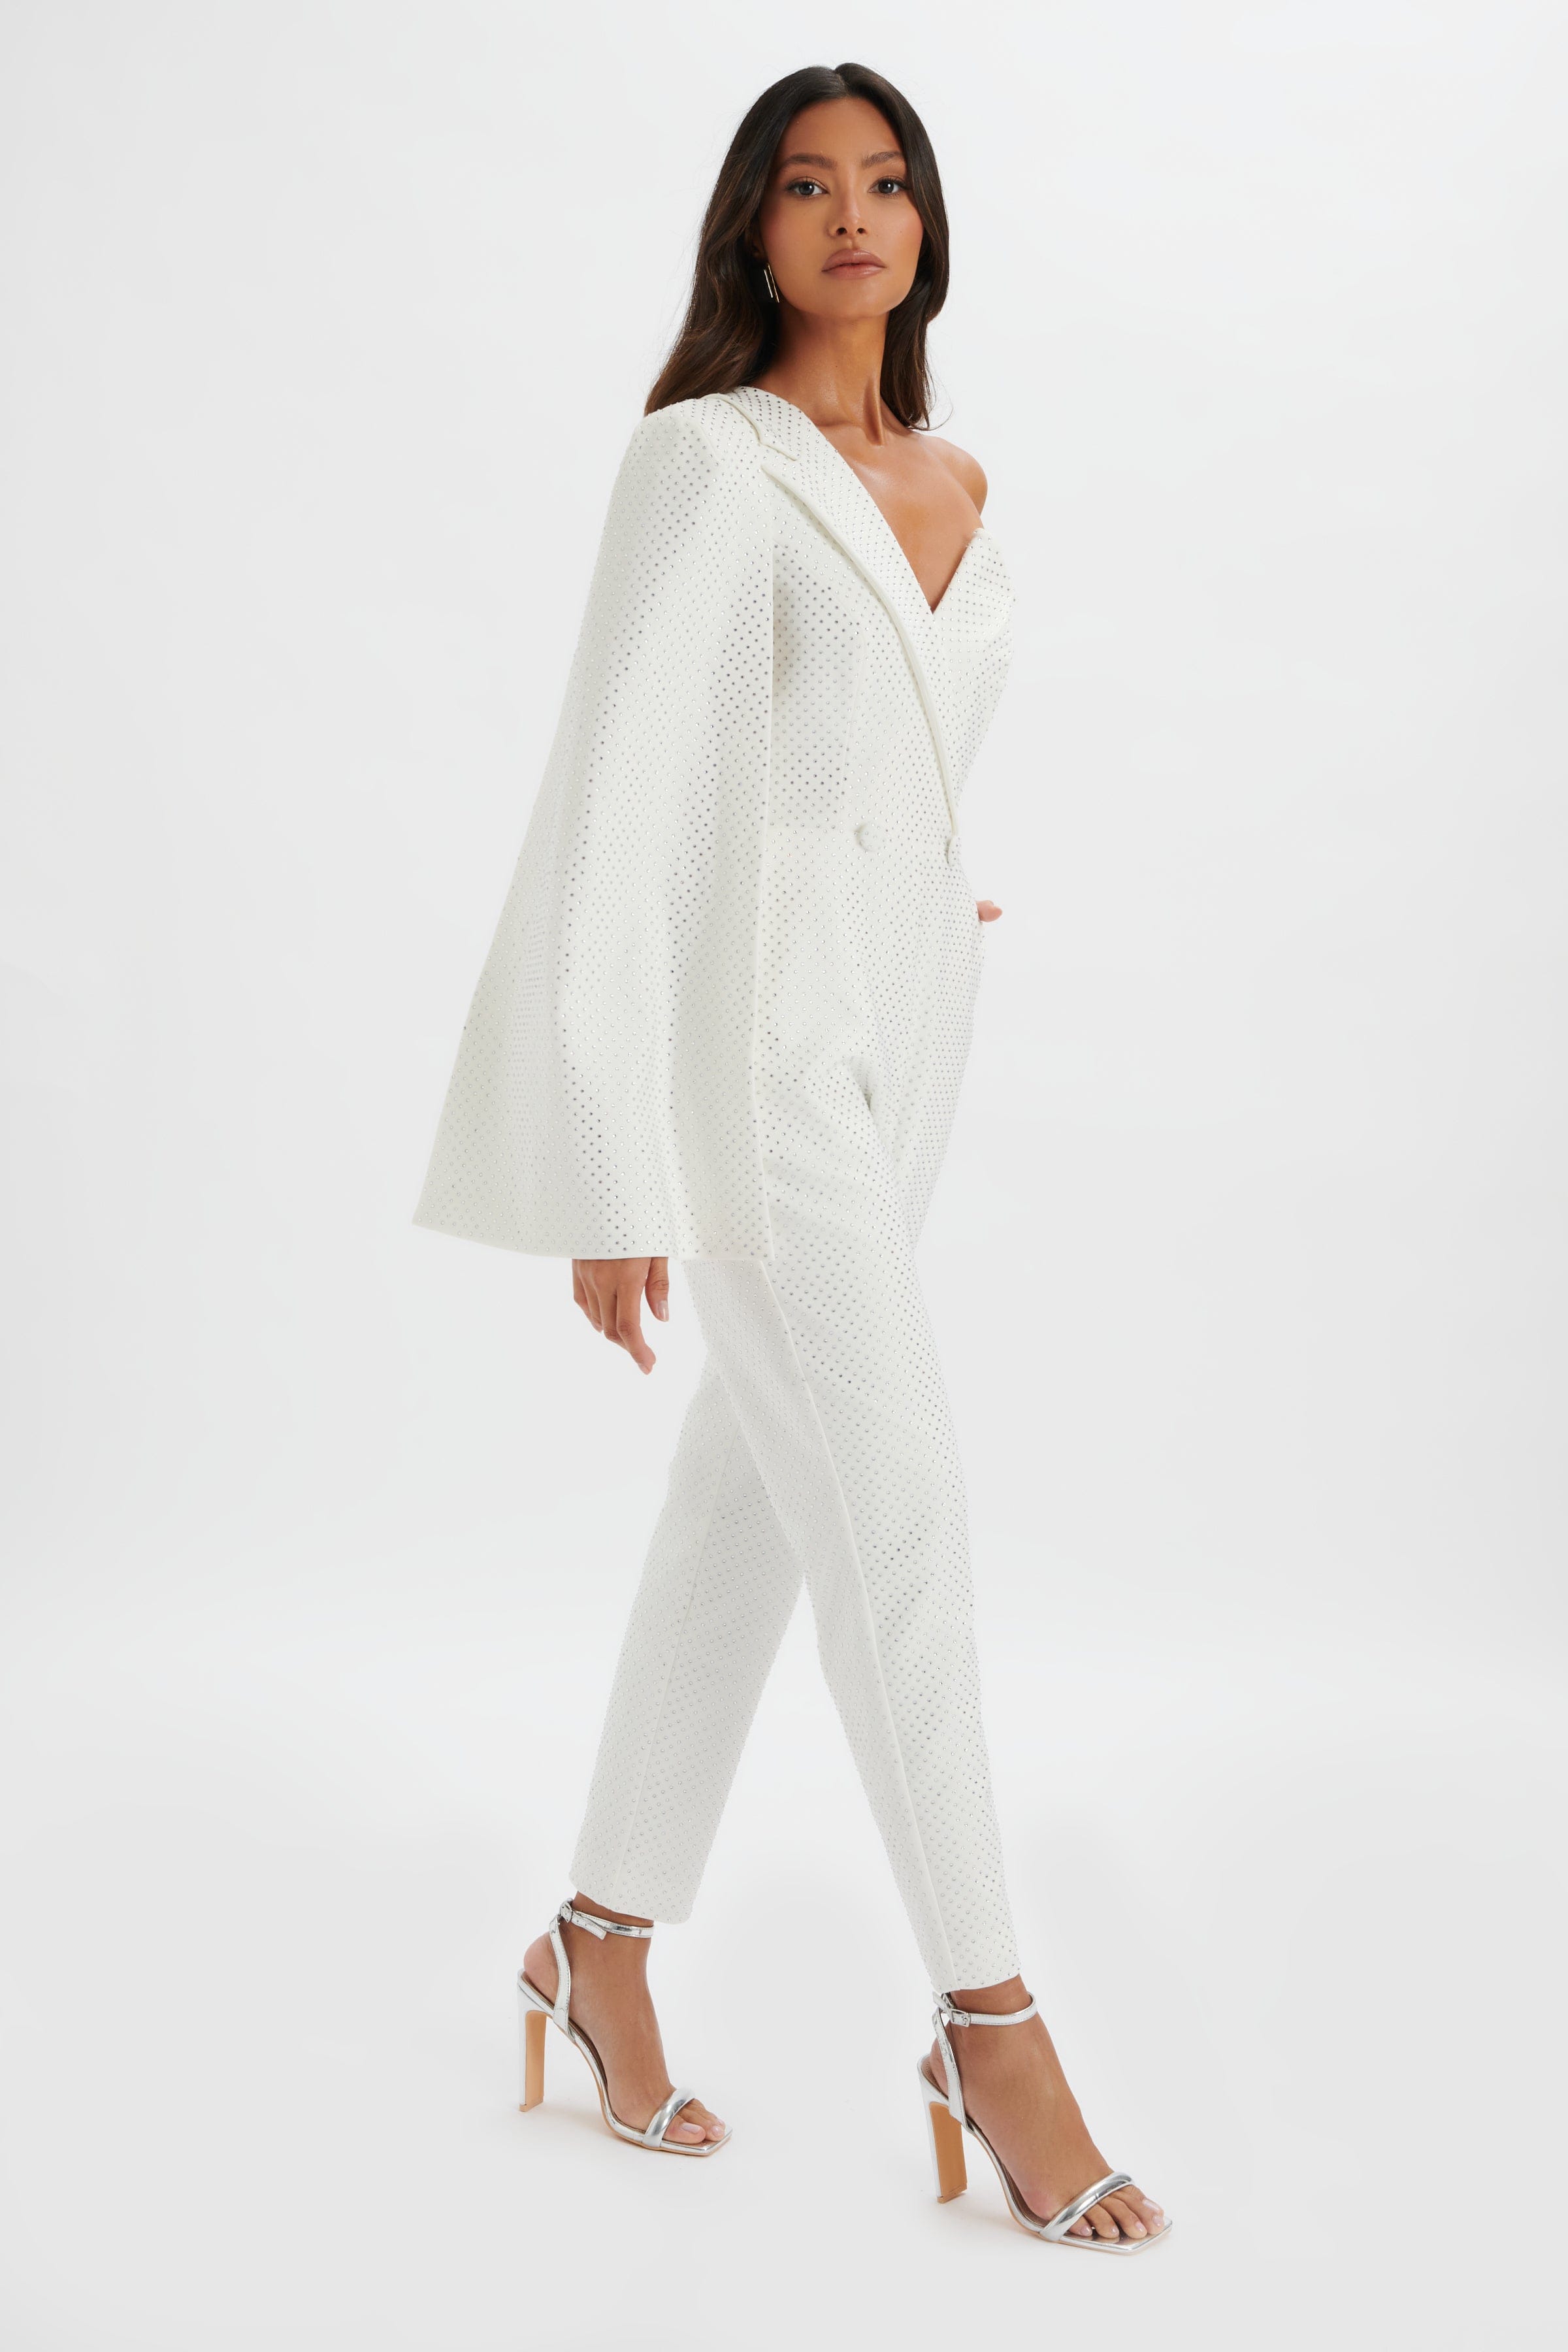 MISCHA Crystal Embellished One Shoulder Cape Jumpsuit in White